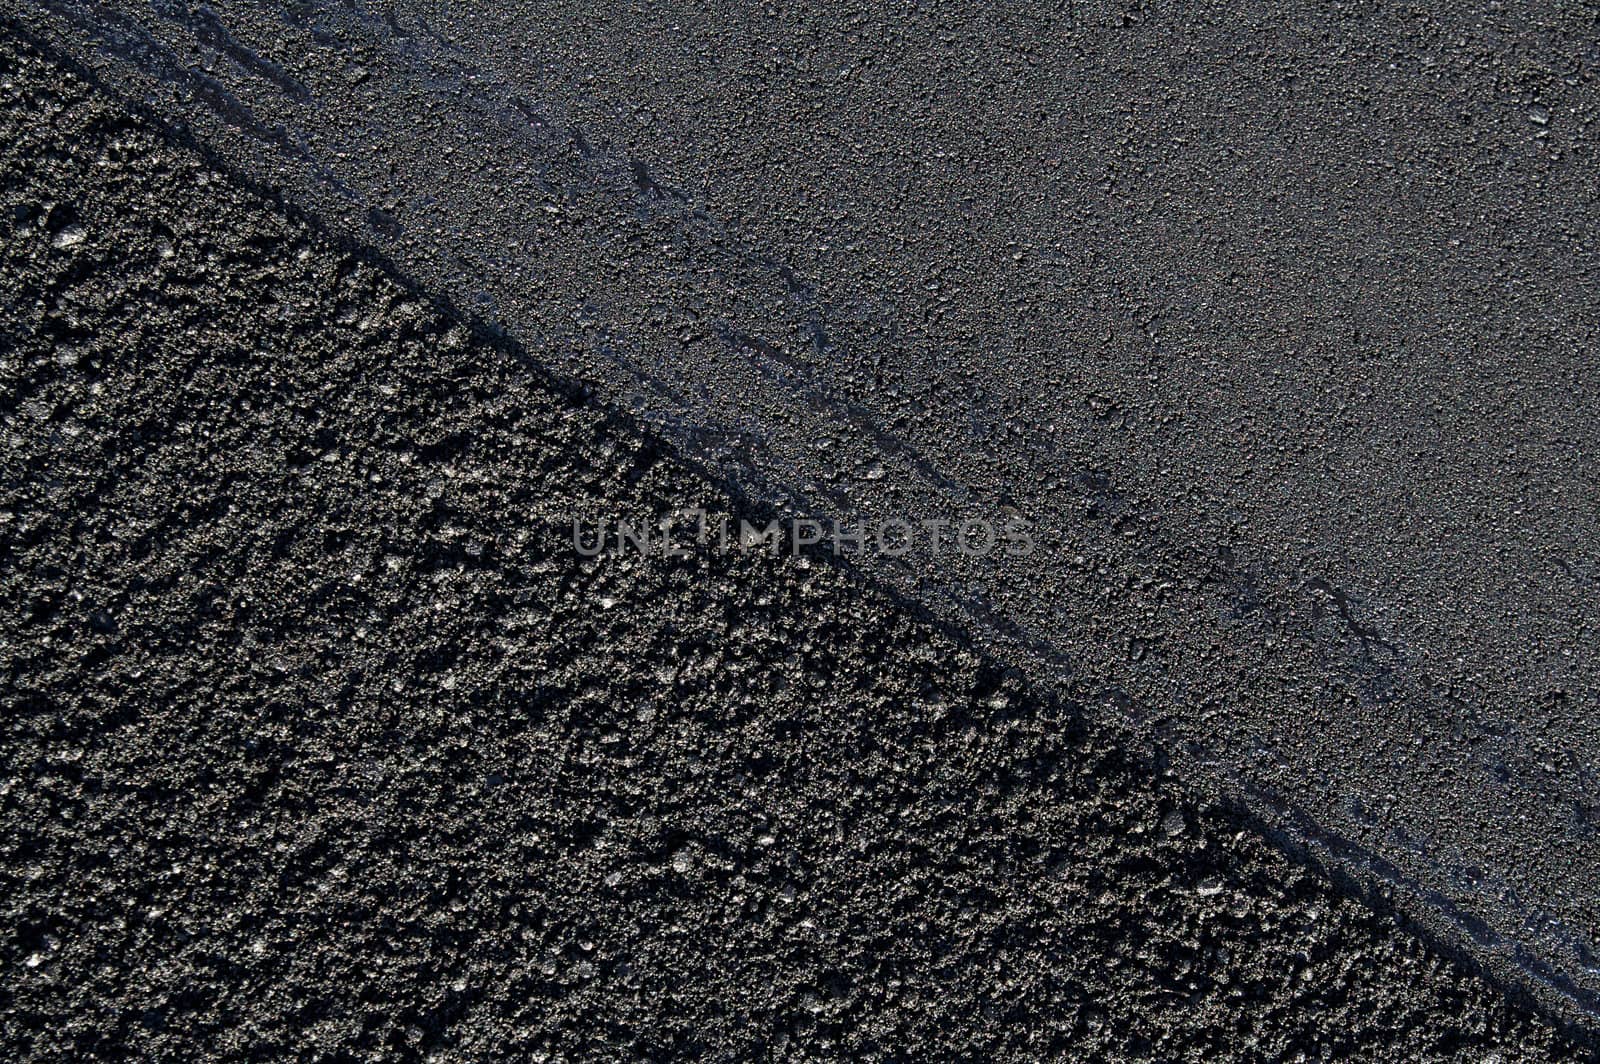 New asphalt texture